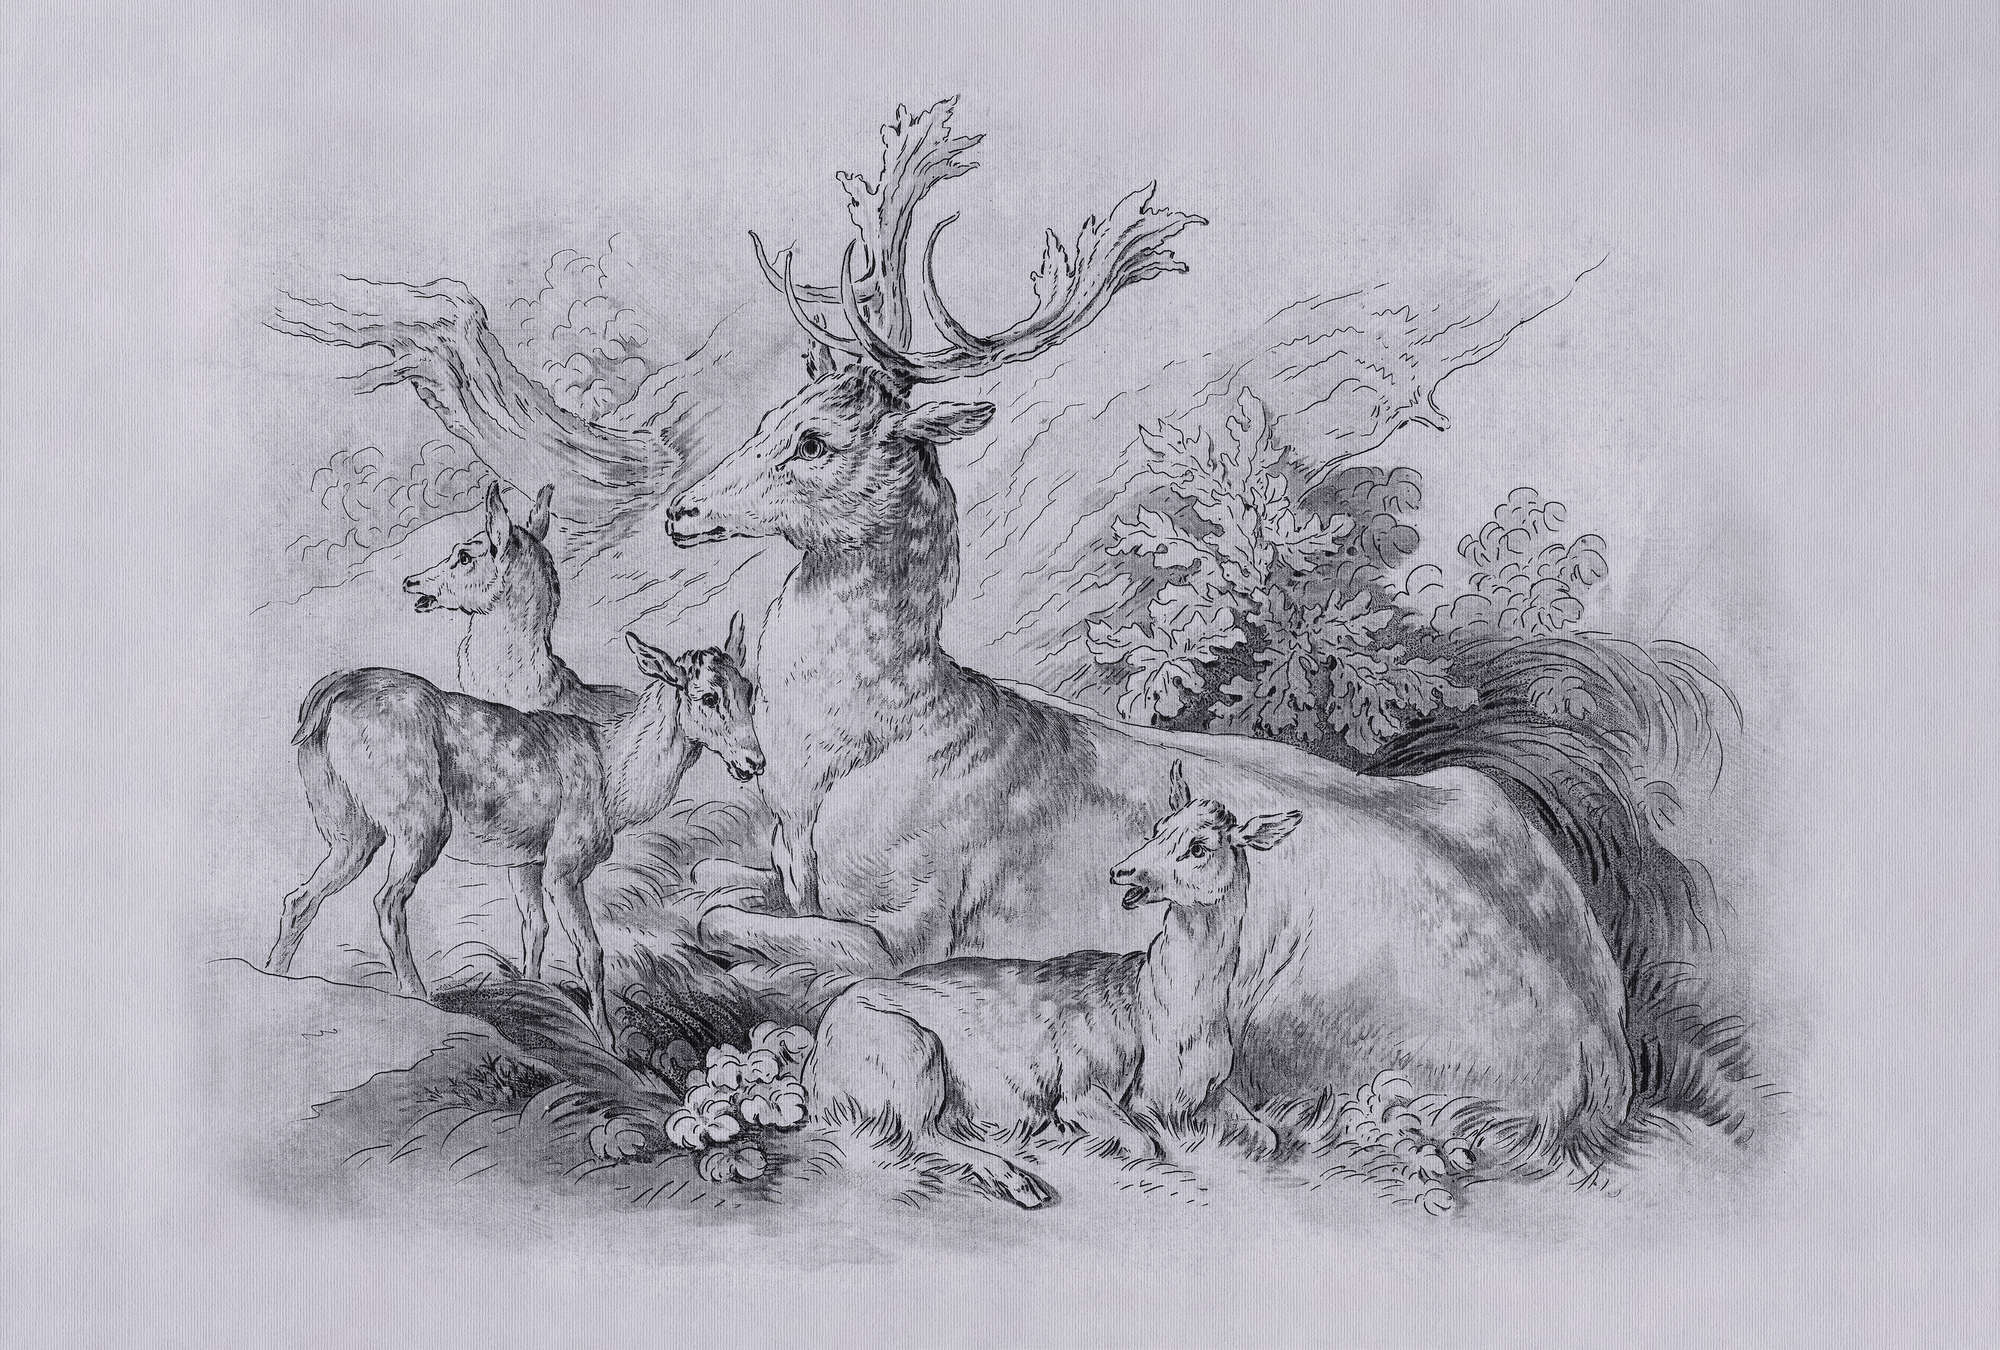             On the Grass 2 - Papel Pintado Dibujo Vintage de Ciervos y Ciervos en Gris
        